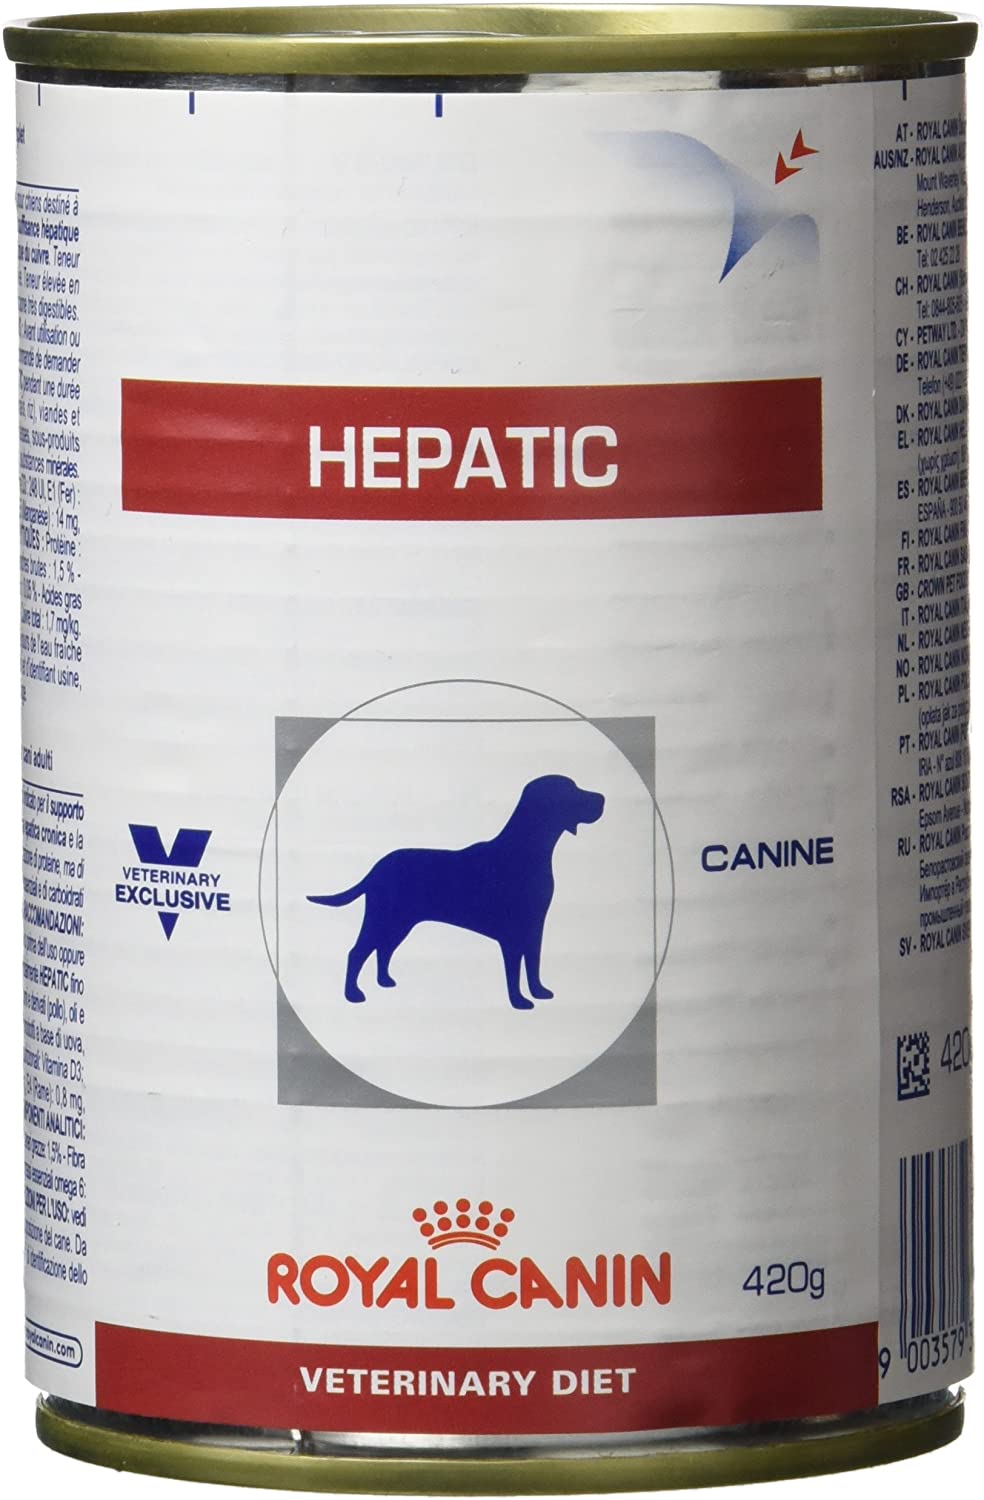  Royal Canin C-11399 Diet Hepatic Hf16 - 420 gr 